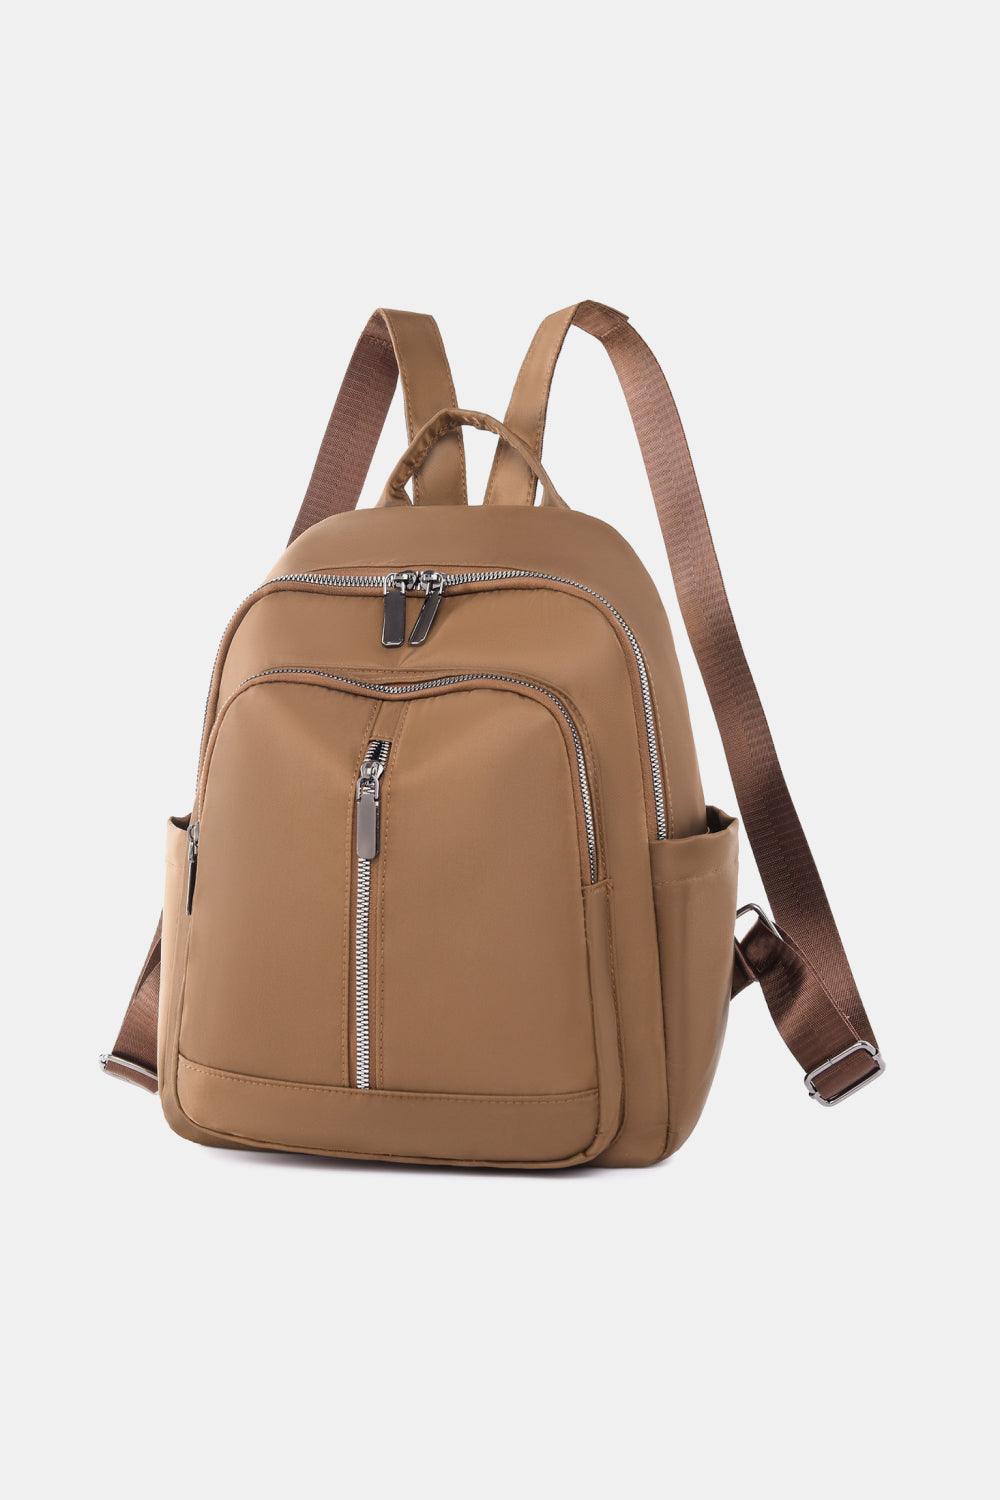 Medium Nylon Backpack - Lab Fashion, Home & Health